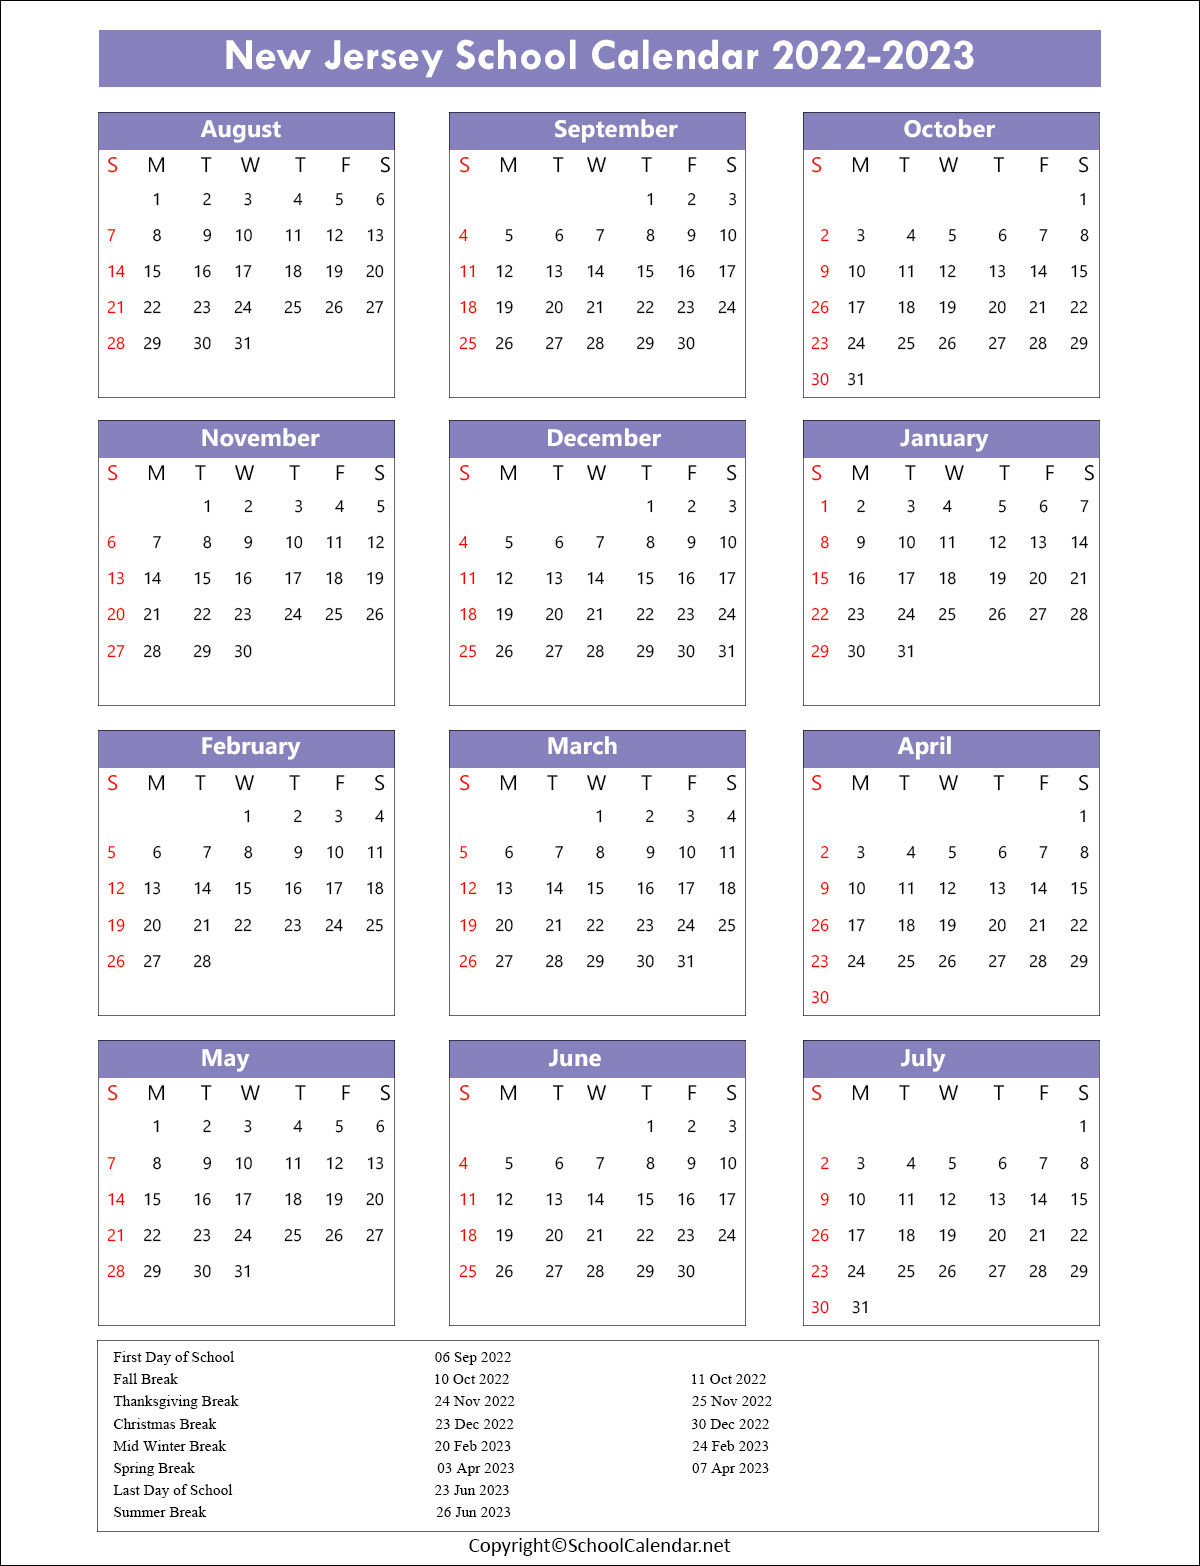 New-Jersey School Calendar 2022